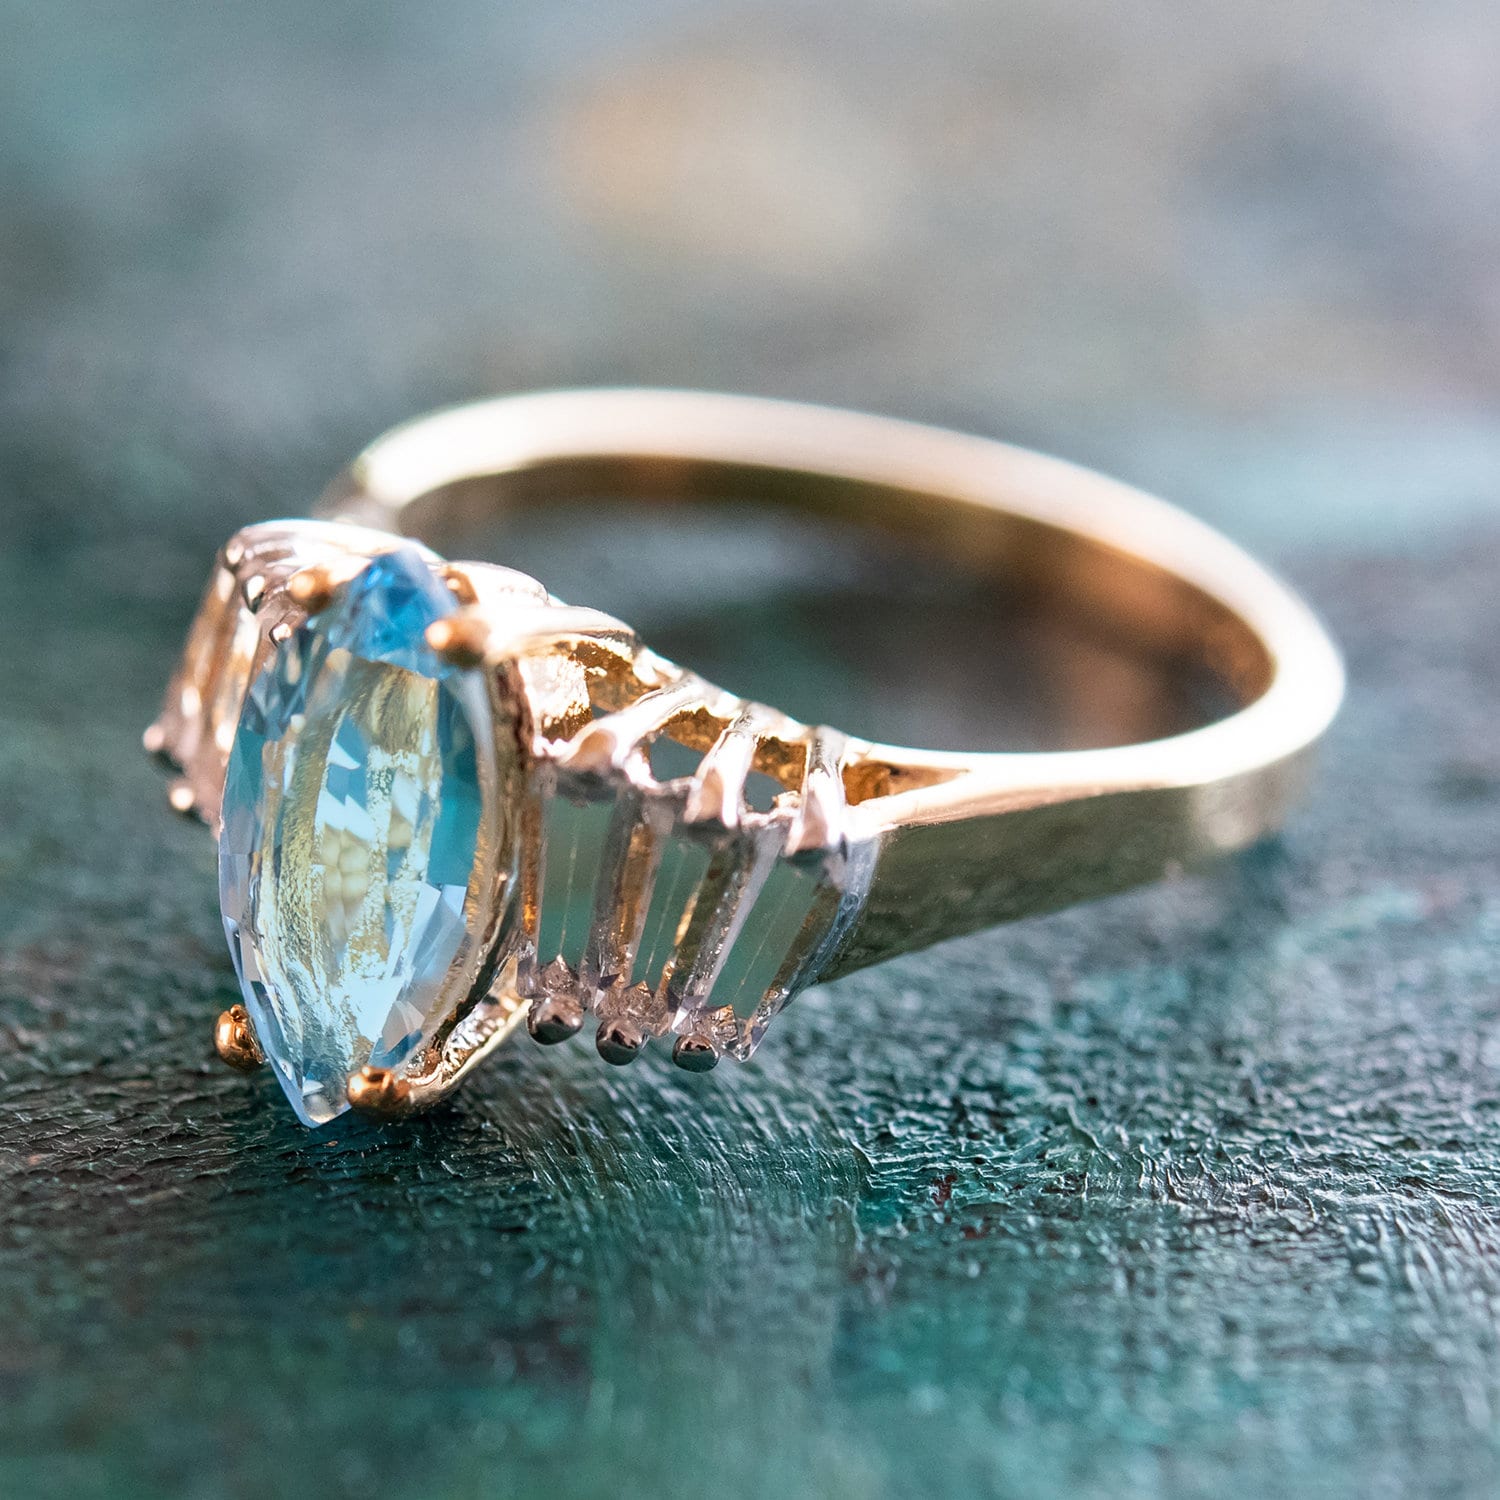 Sterling Silver & Swarovski Crystal Ring Size 7 NWT | eBay